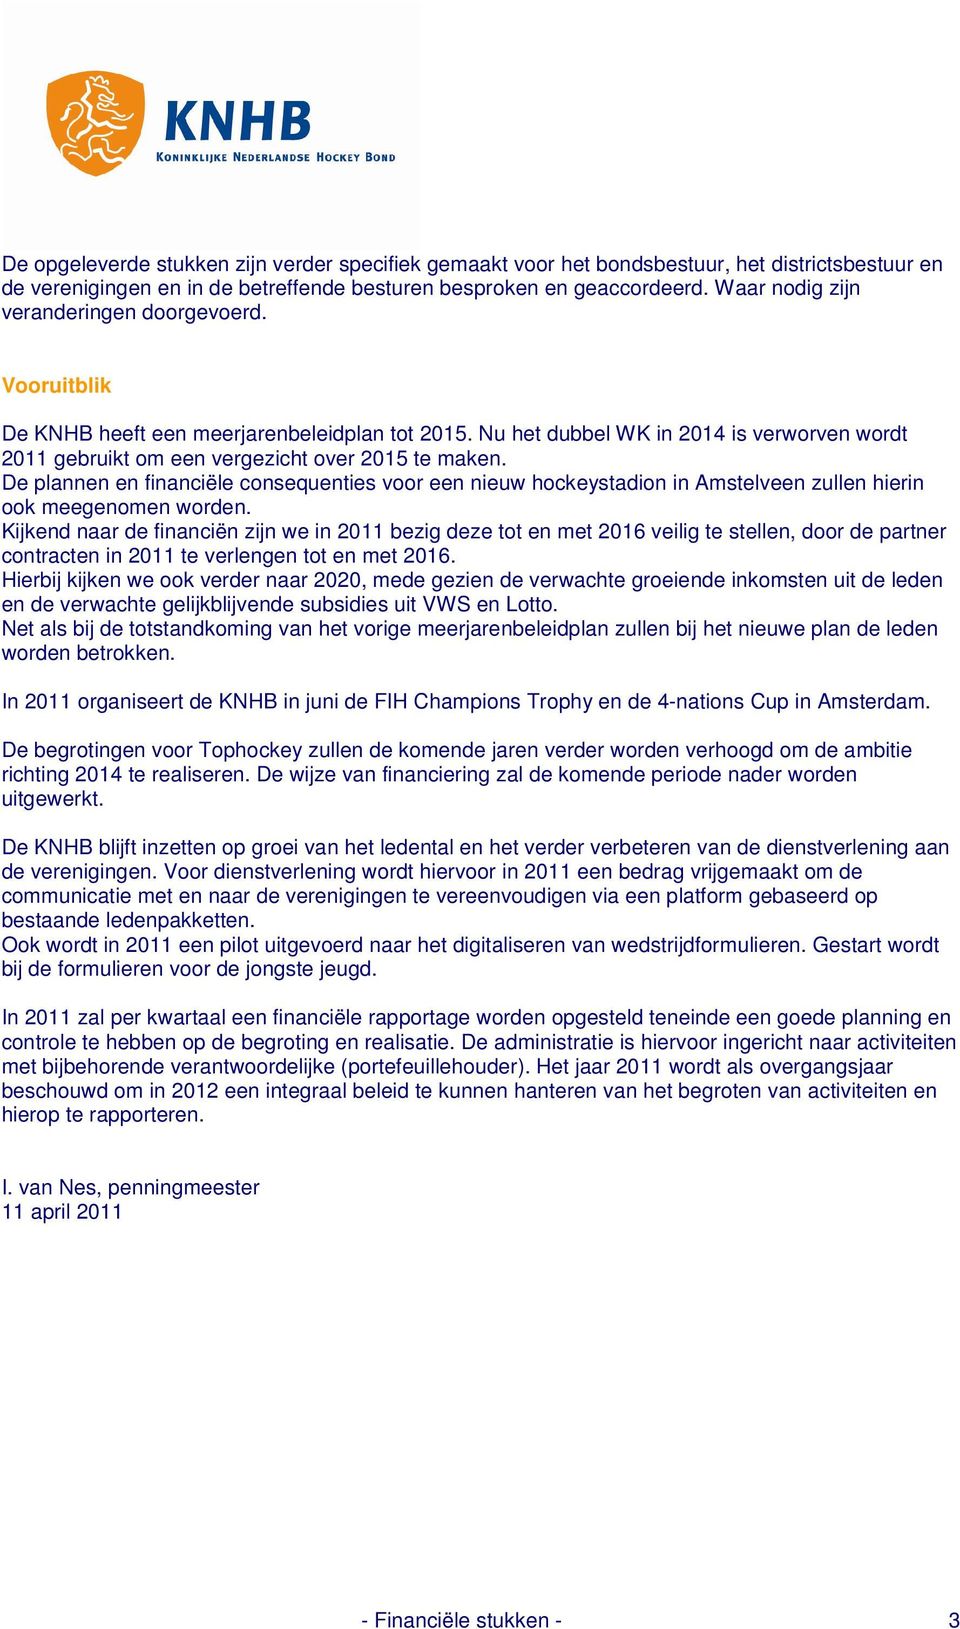 De plannen en financiële consequenties voor een nieuw hockeystadion in Amstelveen zullen hierin ook meegenomen worden.